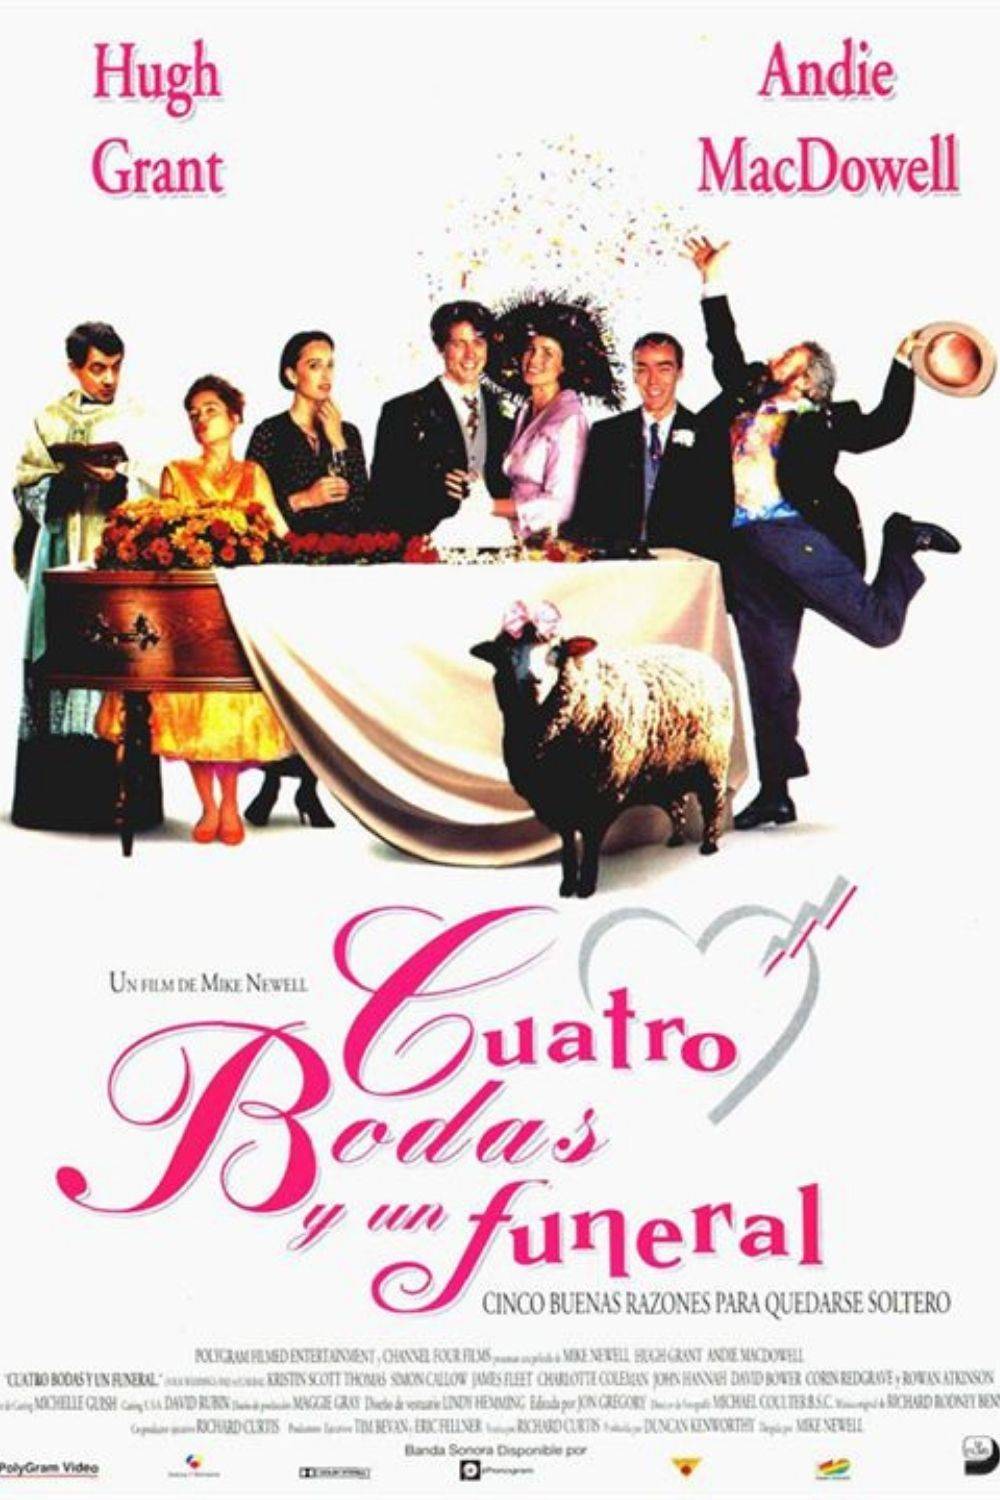 Comedias románticas - Cuatro bodas y un funeral (1994)